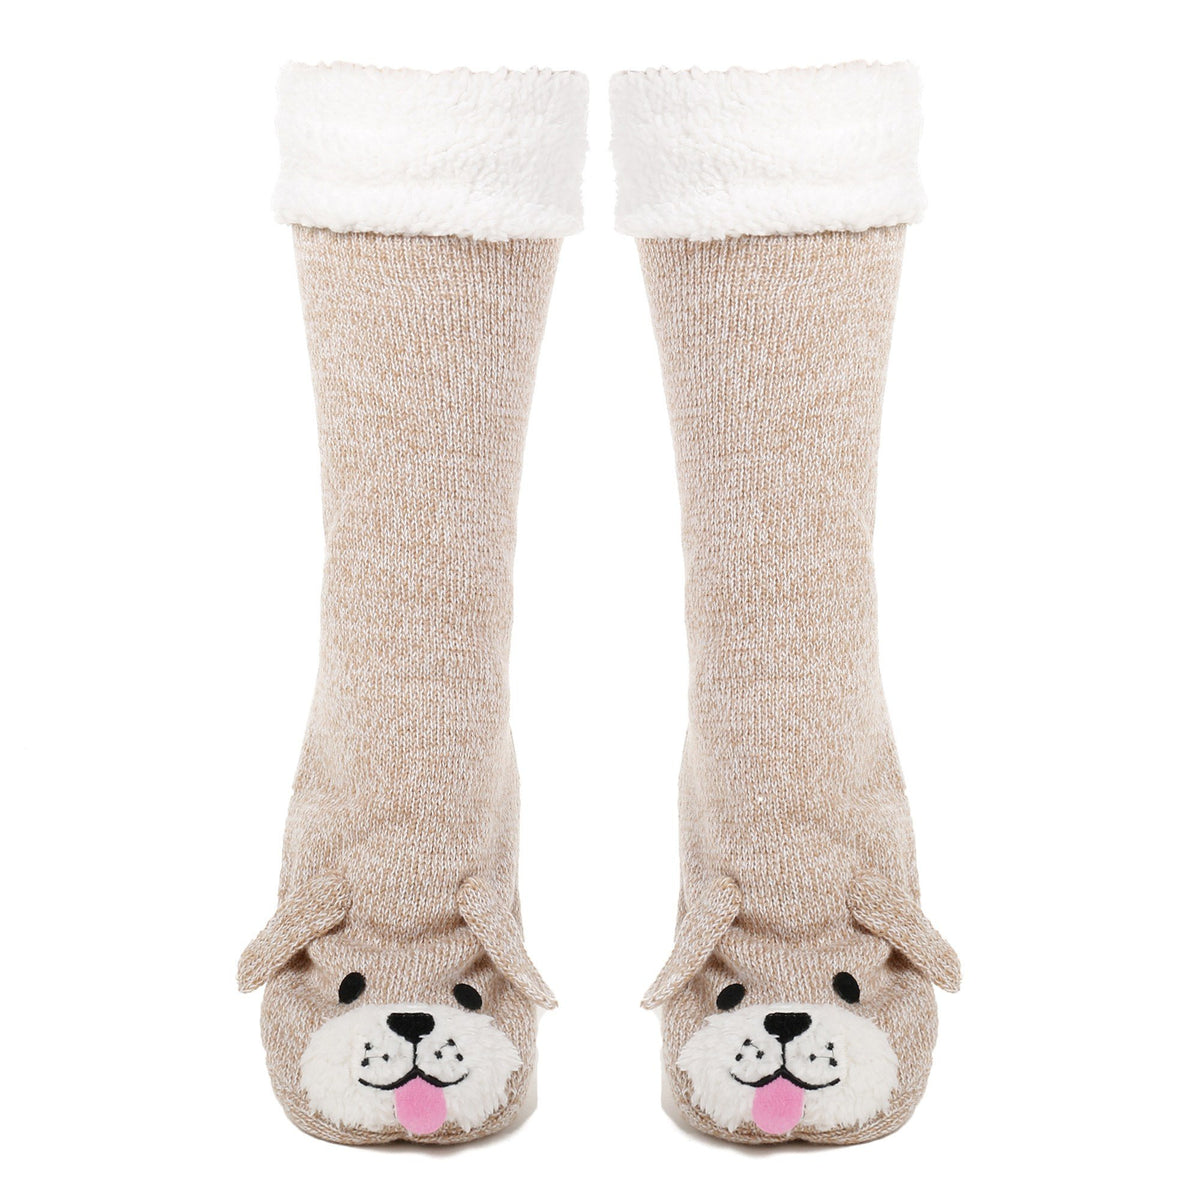 Women's Cute Knit Dog Slipper Socks - Ivory/Beige